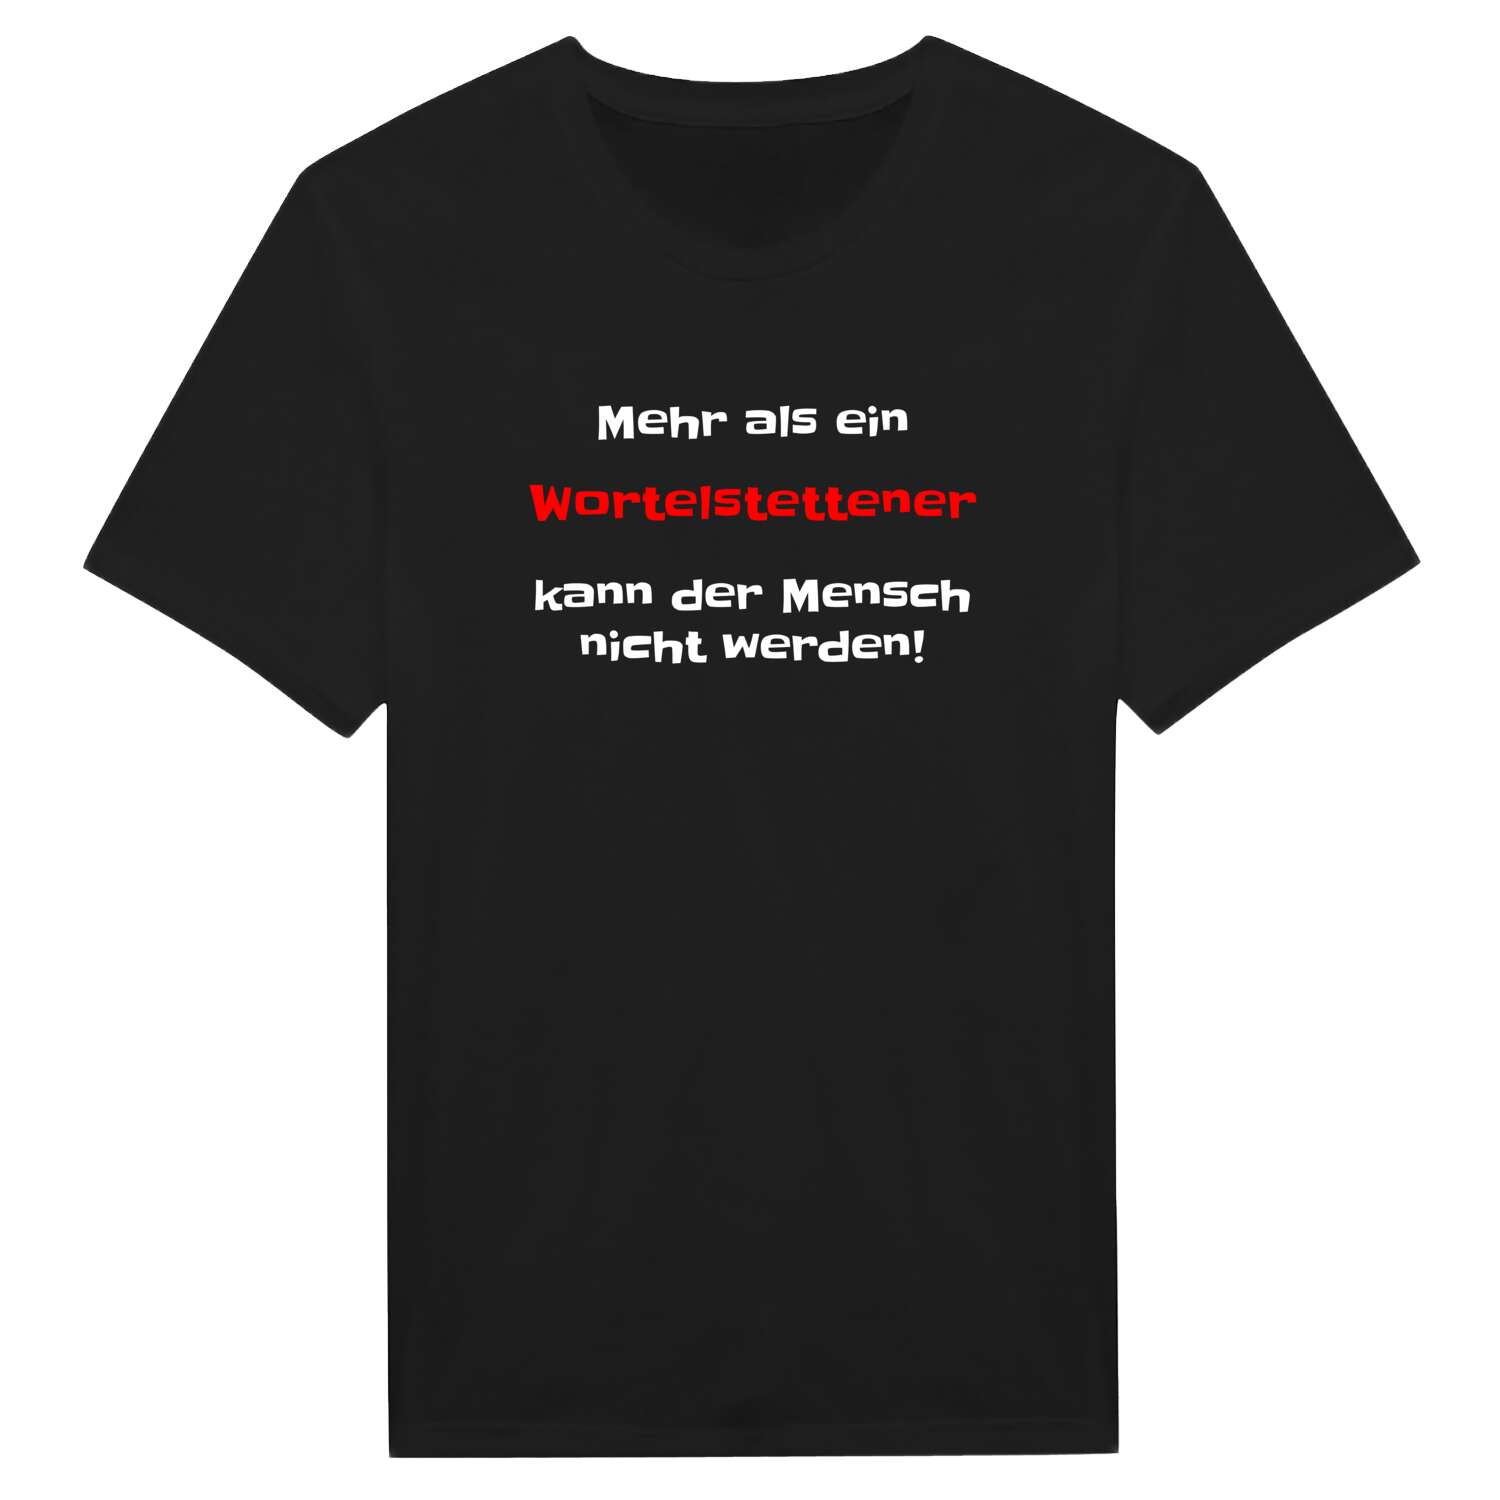 Wortelstetten T-Shirt »Mehr als ein«